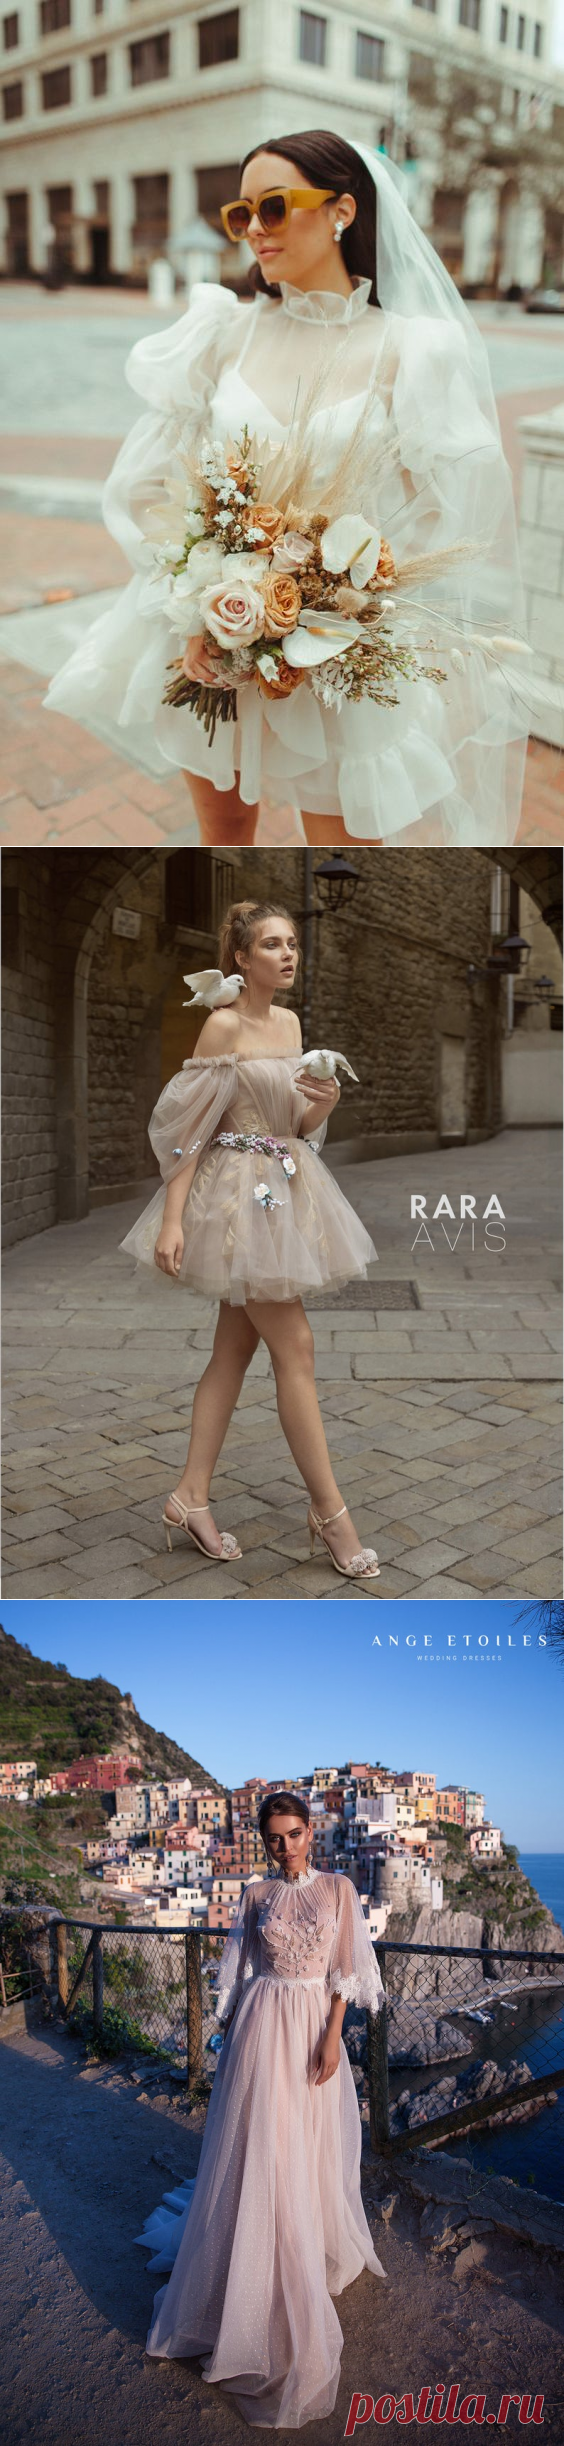 2021 Trend Spring Wedding Dress Ideas | Ferbena.com | Fashion Blog & Magazine